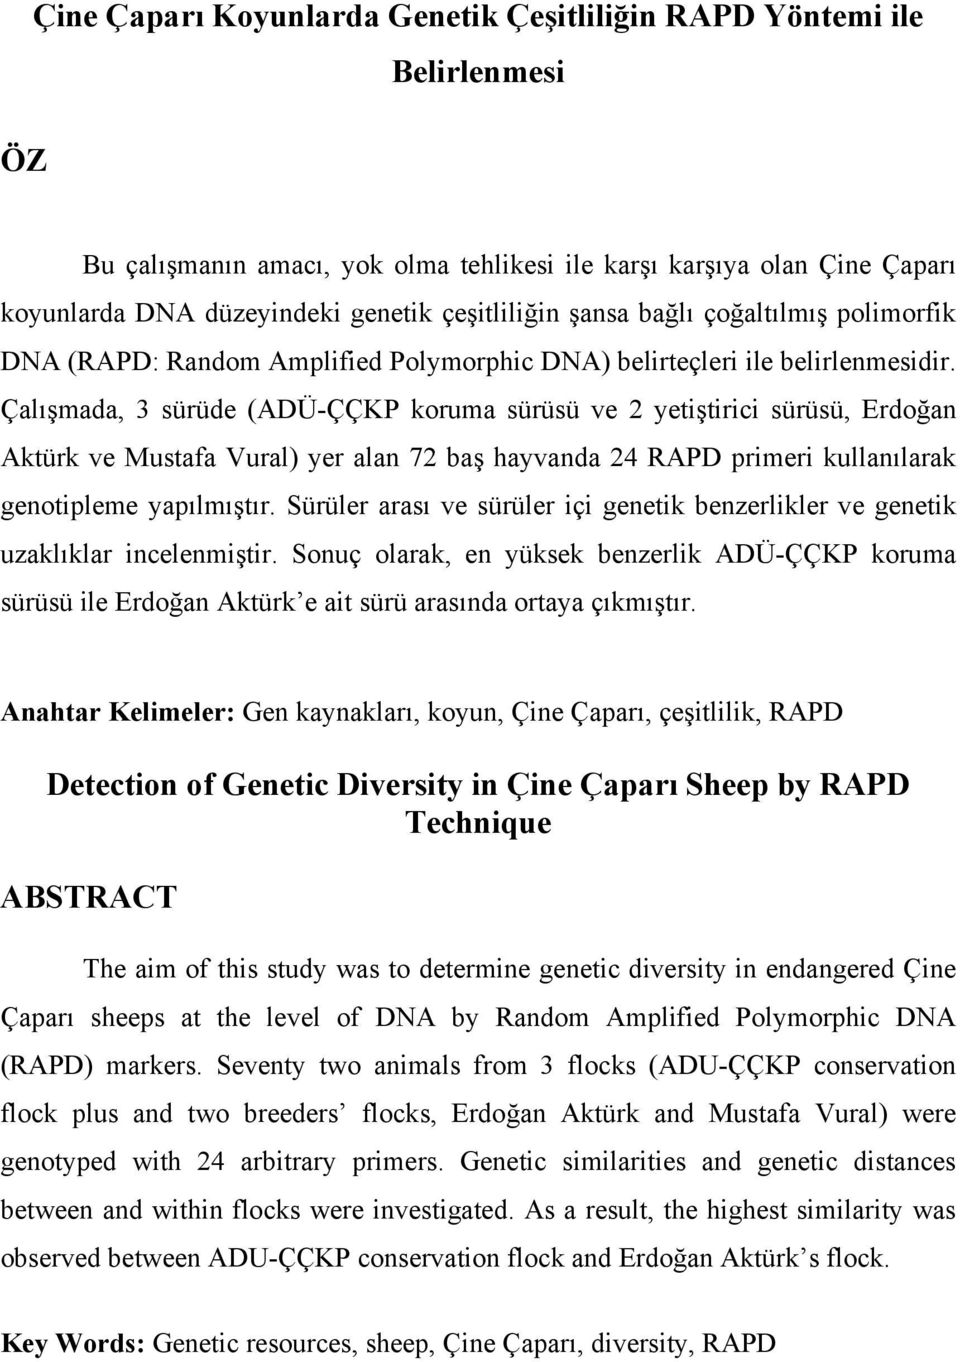 Çalışmada, 3 sürüde (ADÜ-ÇÇKP koruma sürüsü ve 2 yetiştirici sürüsü, Erdoğan Aktürk ve Mustafa Vural) yer alan 72 baş hayvanda 24 RAPD primeri kullanılarak genotipleme yapılmıştır.